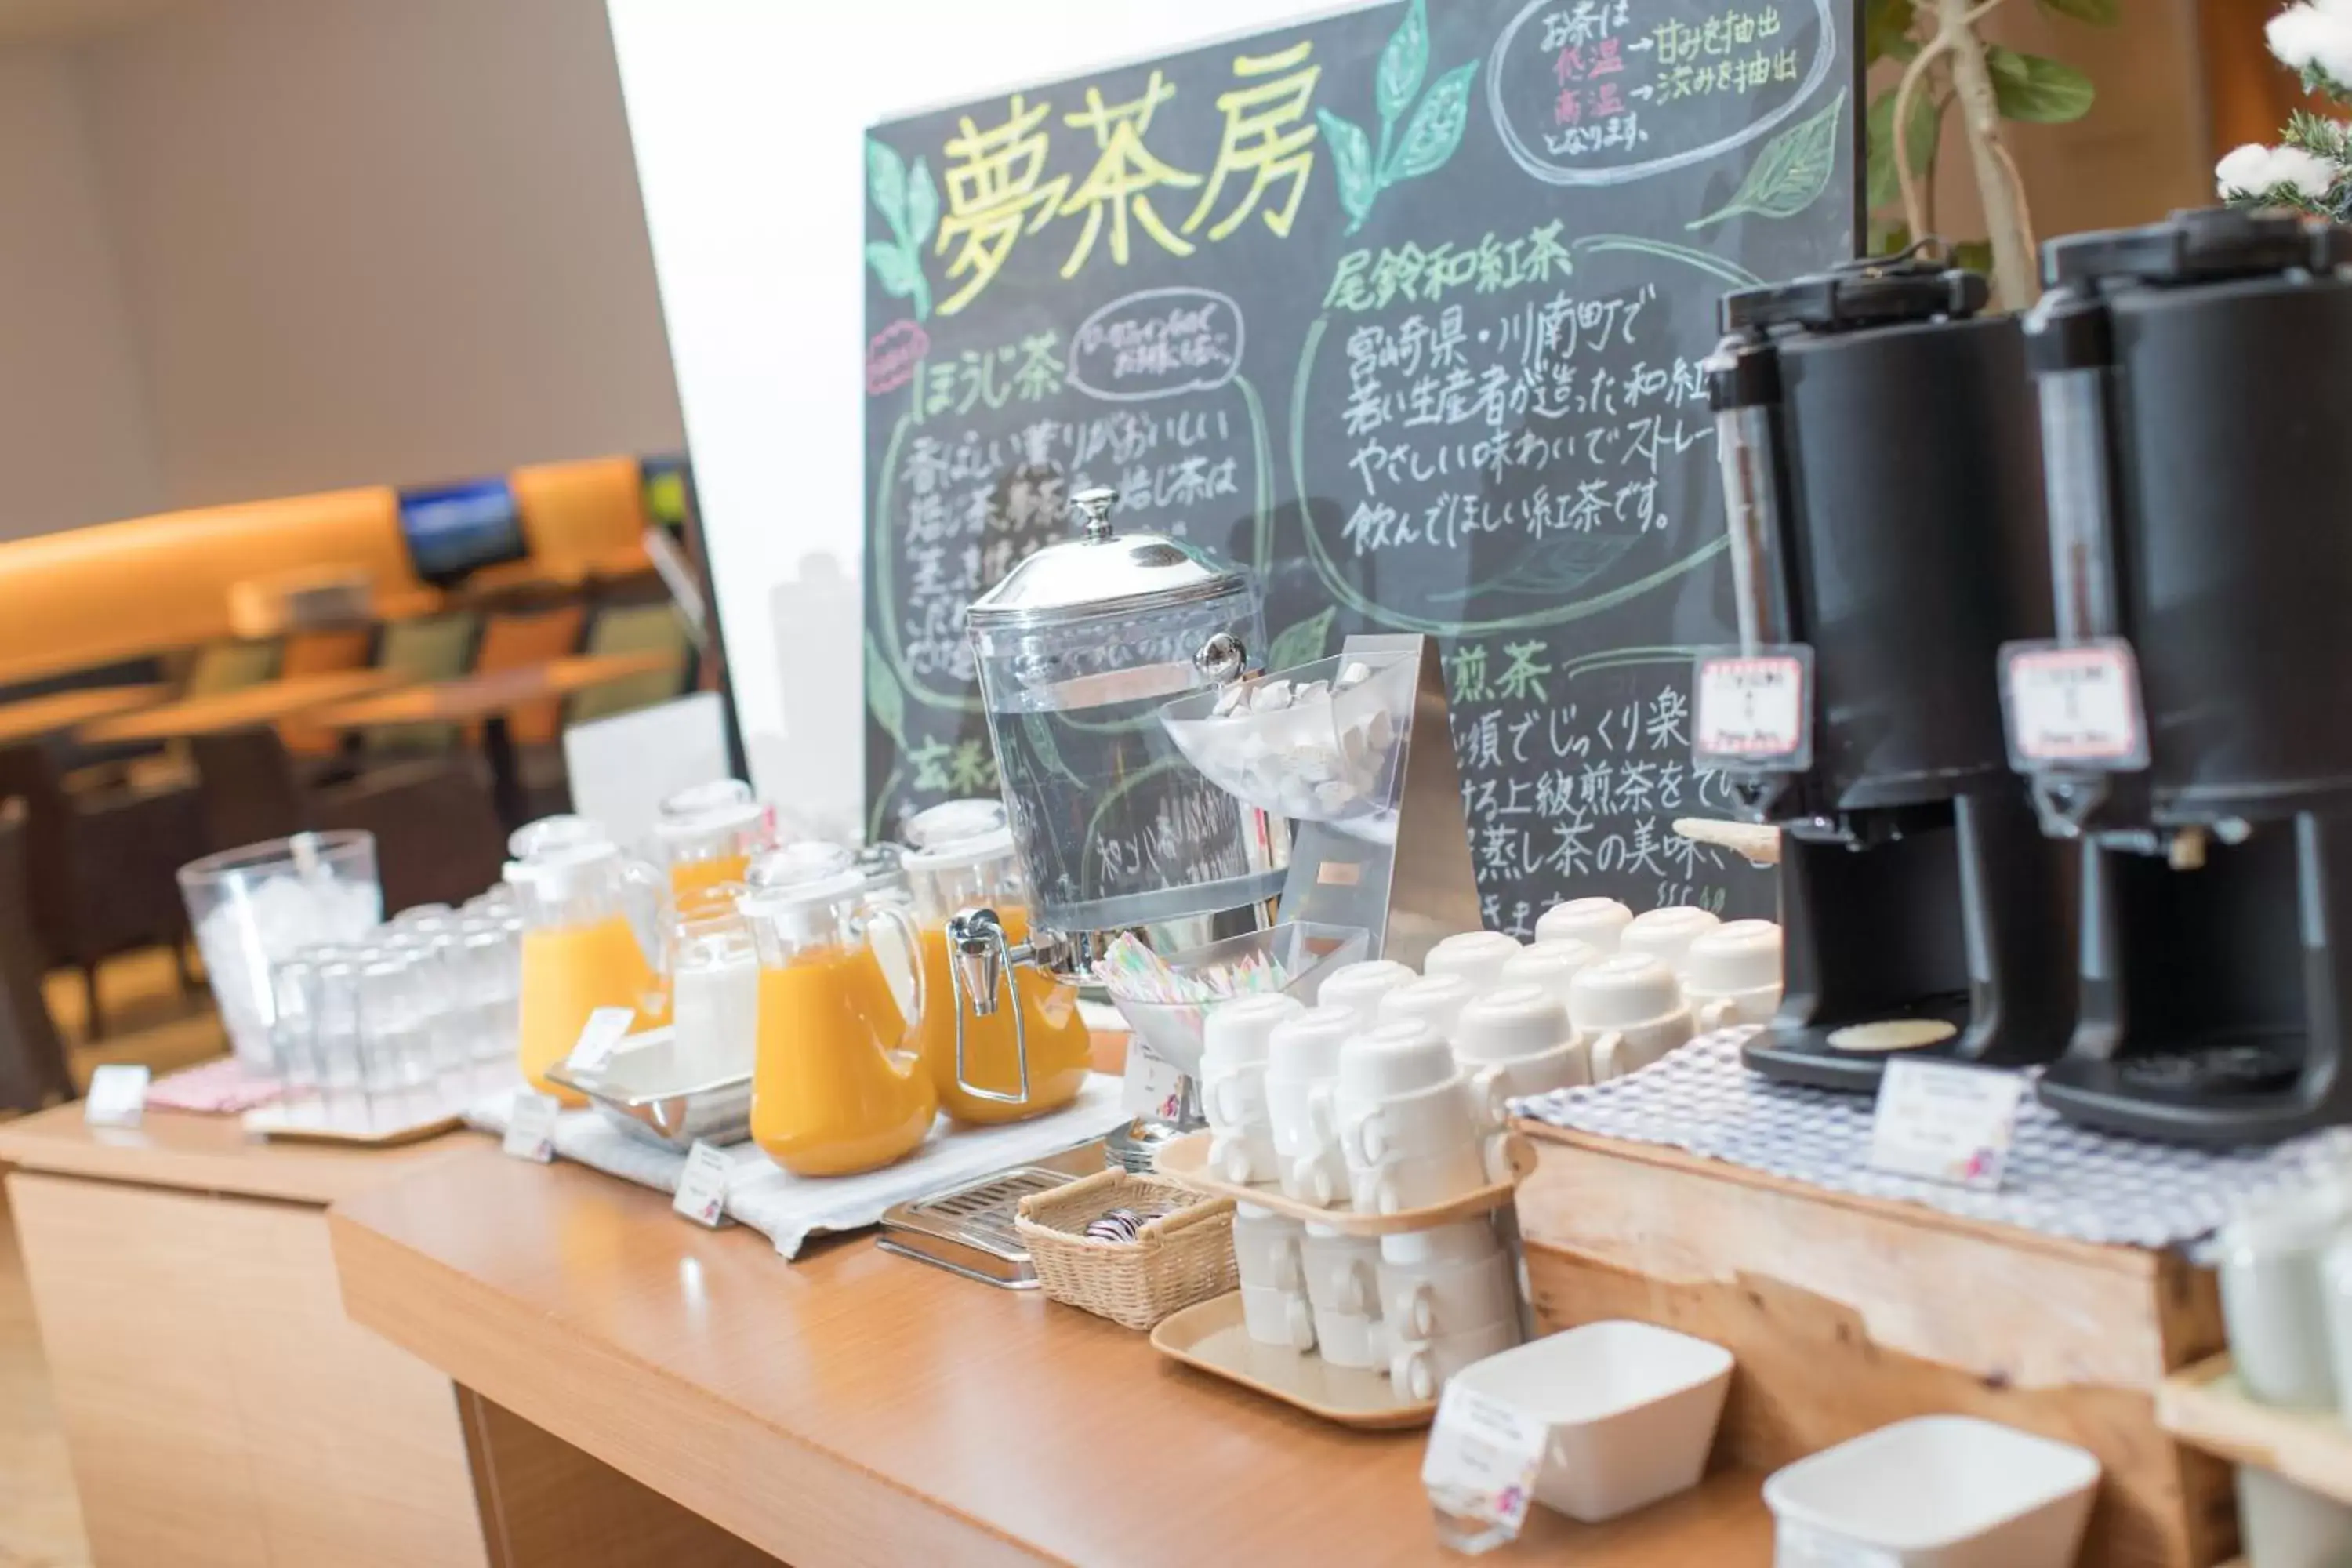 Breakfast, Coffee/Tea Facilities in JR Kyushu Hotel Miyazaki